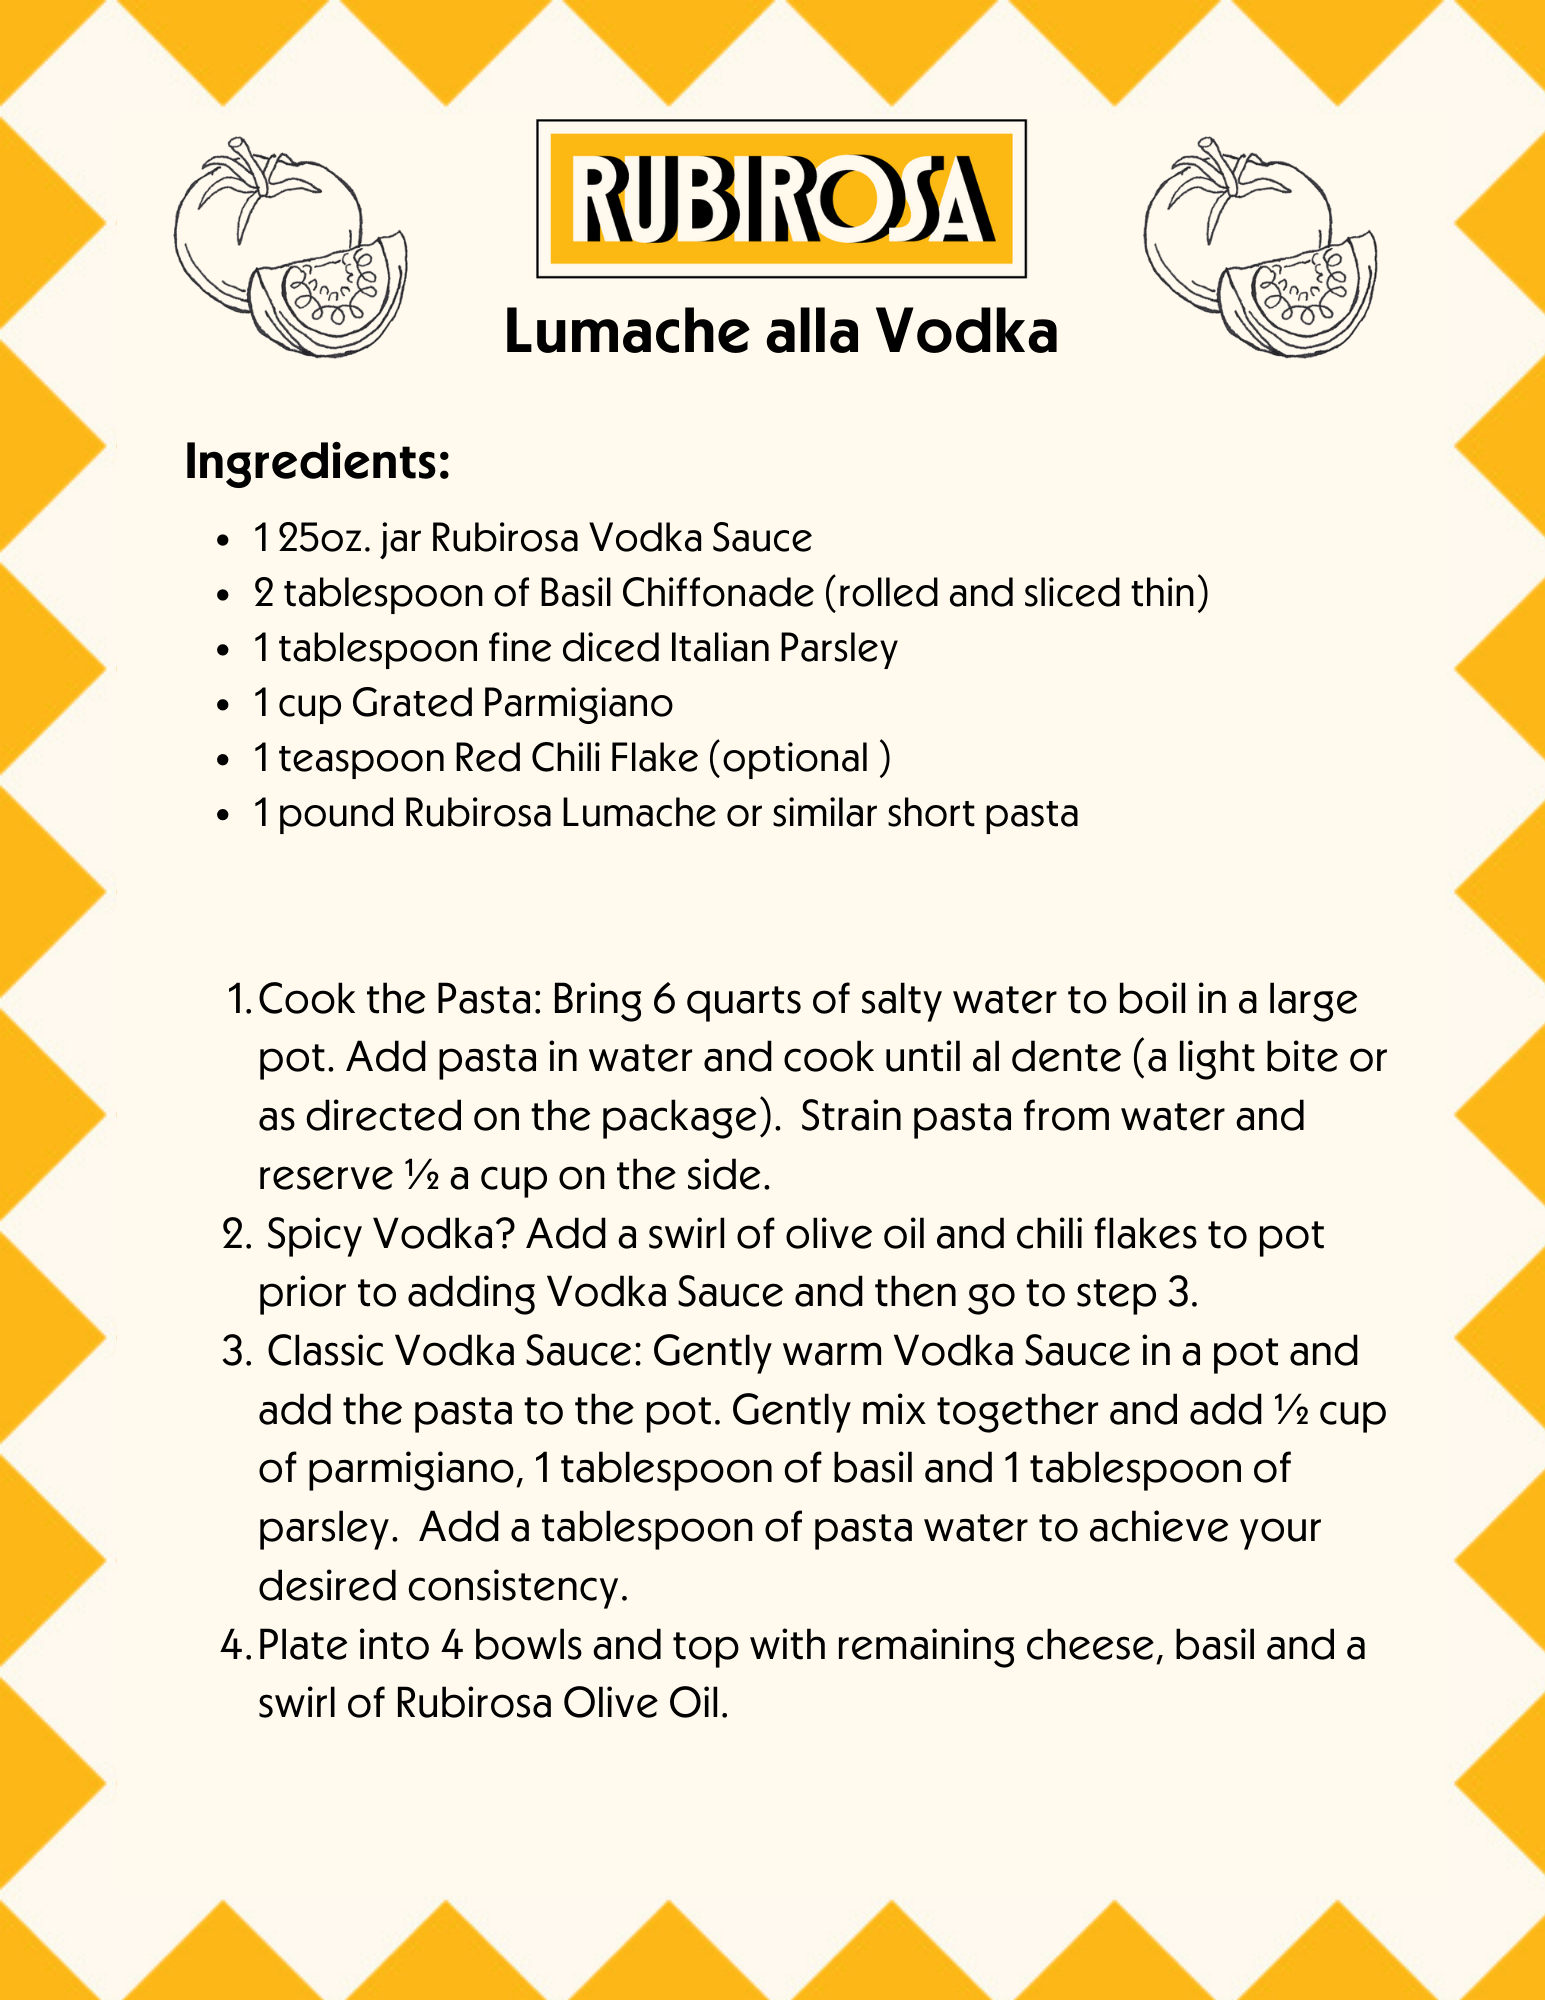 Lumache alla Vodka recipe